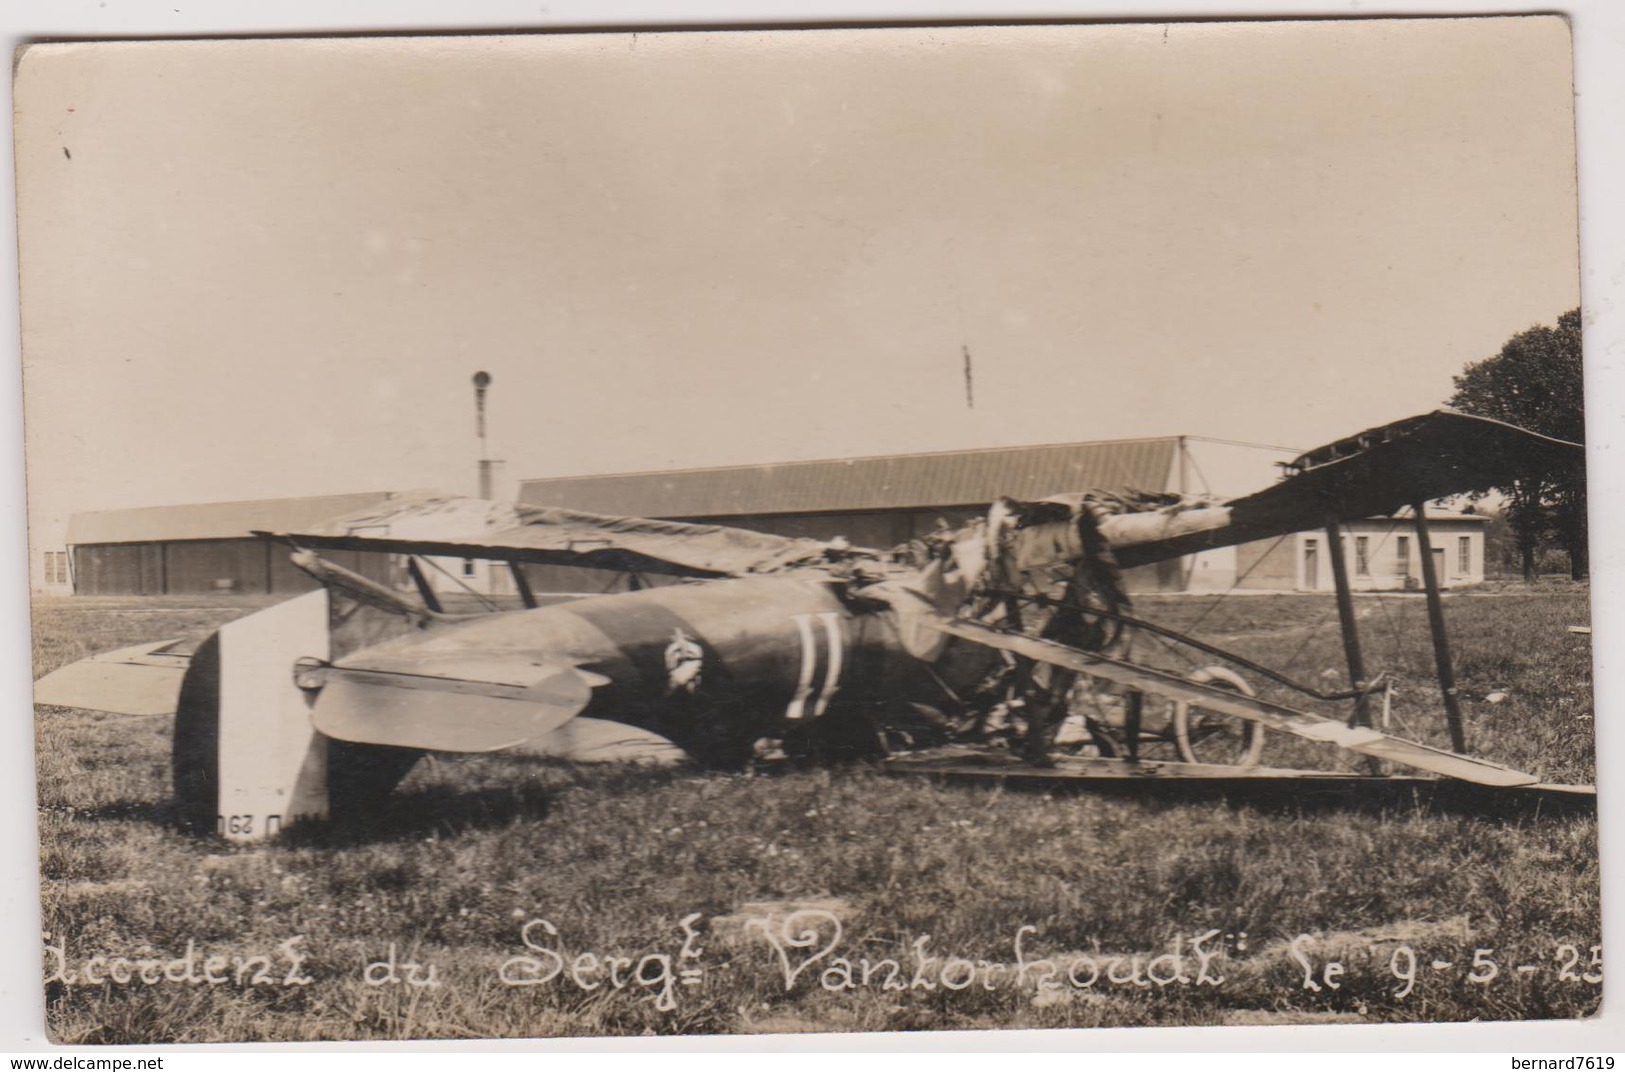 Aviation Accident Le 09 Mai 1925  Sergent Vantorhoudt Ou Vantorkoudt - Accidents